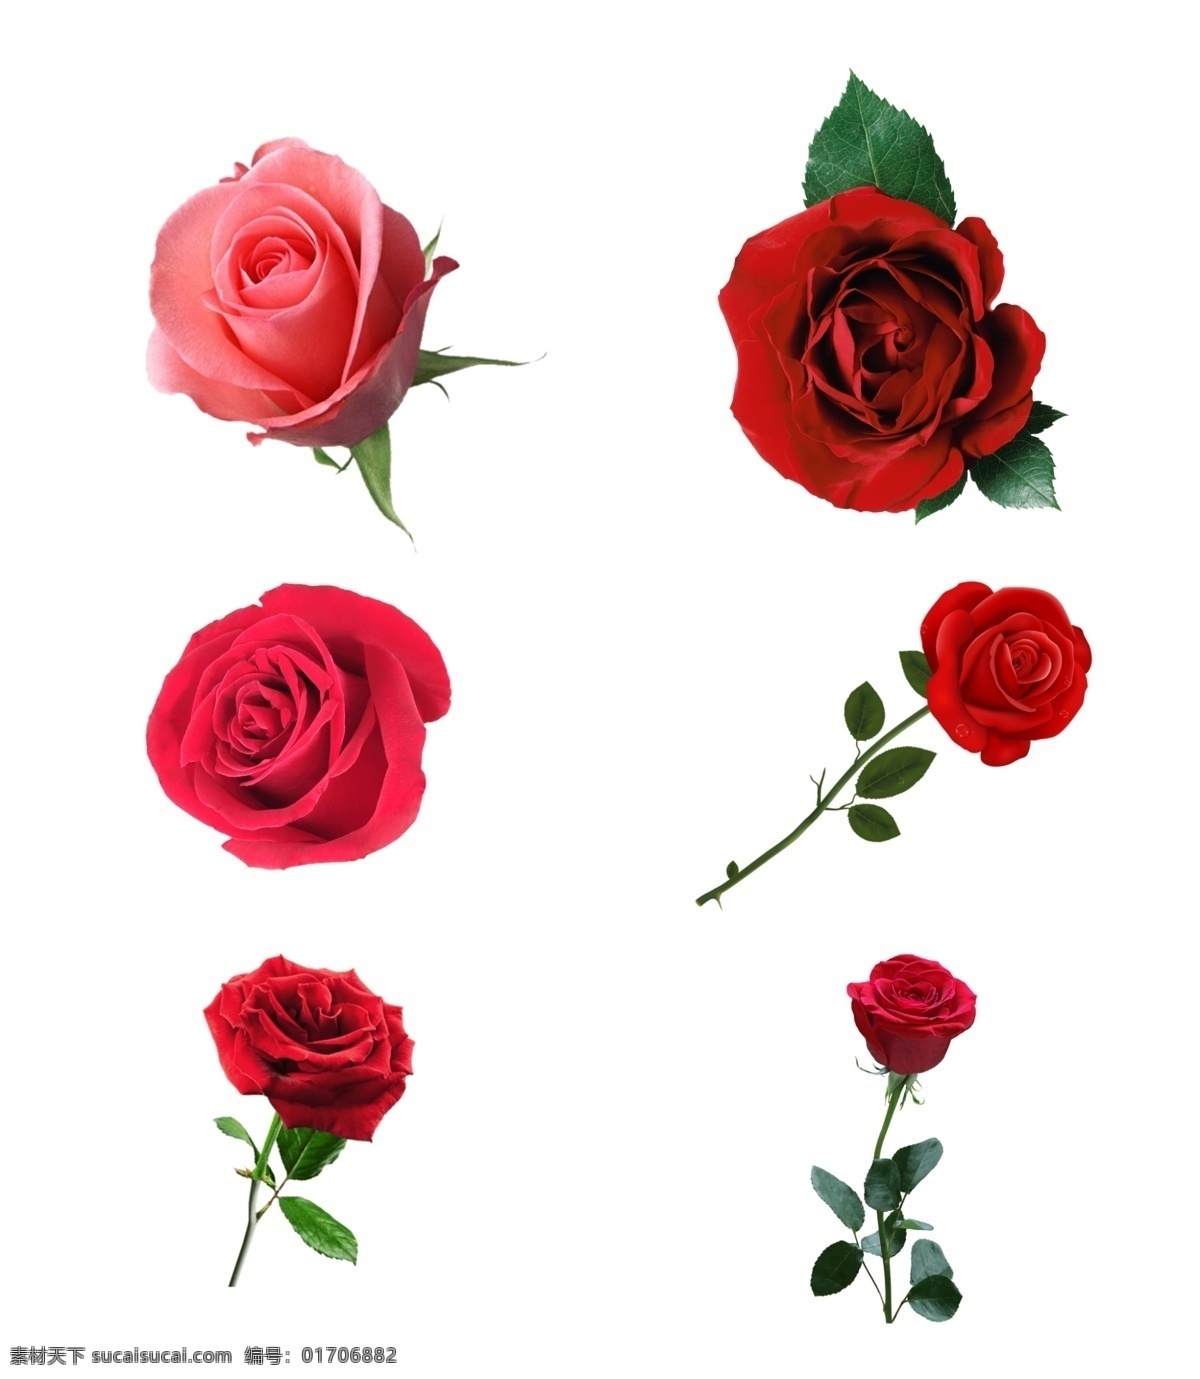 玫瑰花图片 玫瑰花 玫瑰花素材 玫瑰花元素 玫瑰花花朵 玫瑰 玫瑰素材